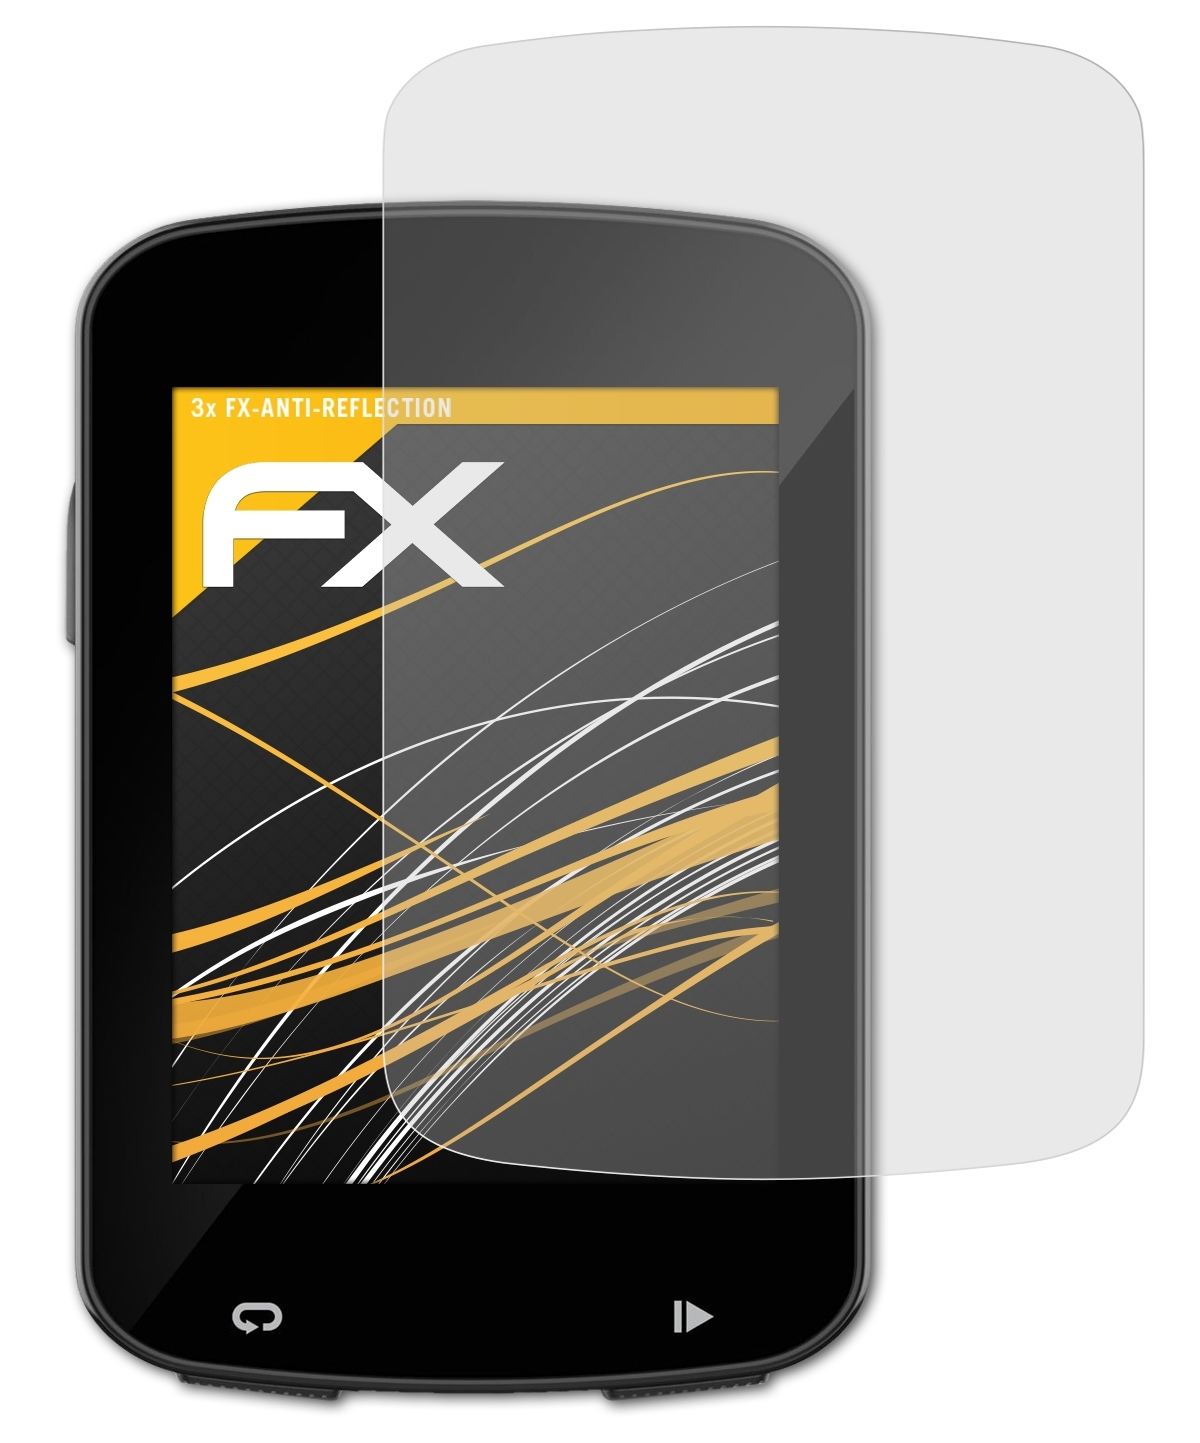 820 Garmin 820) ATFOLIX 3x Displayschutz(für Explore / FX-Antireflex Edge